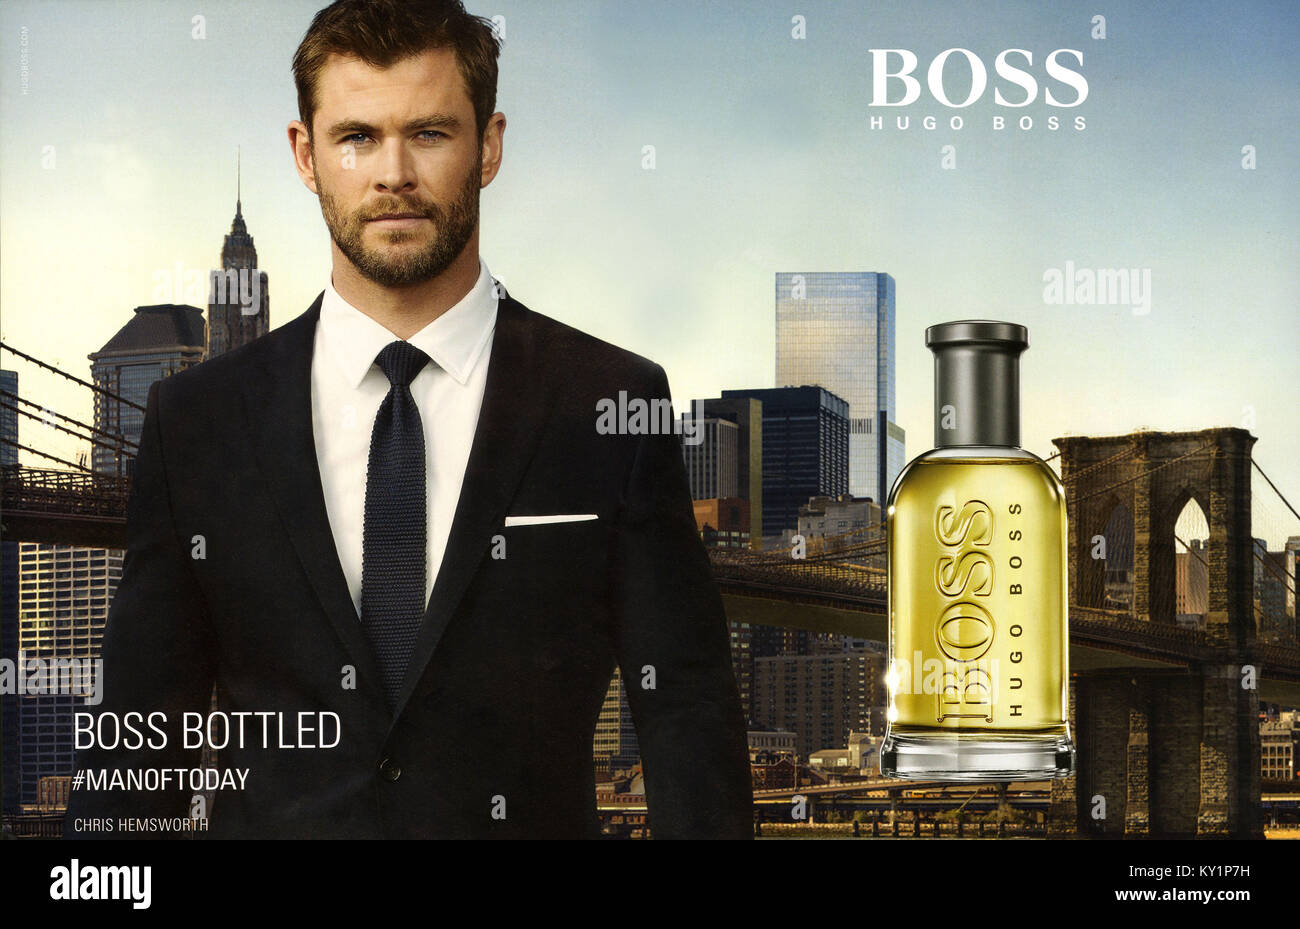 boss perfume uk